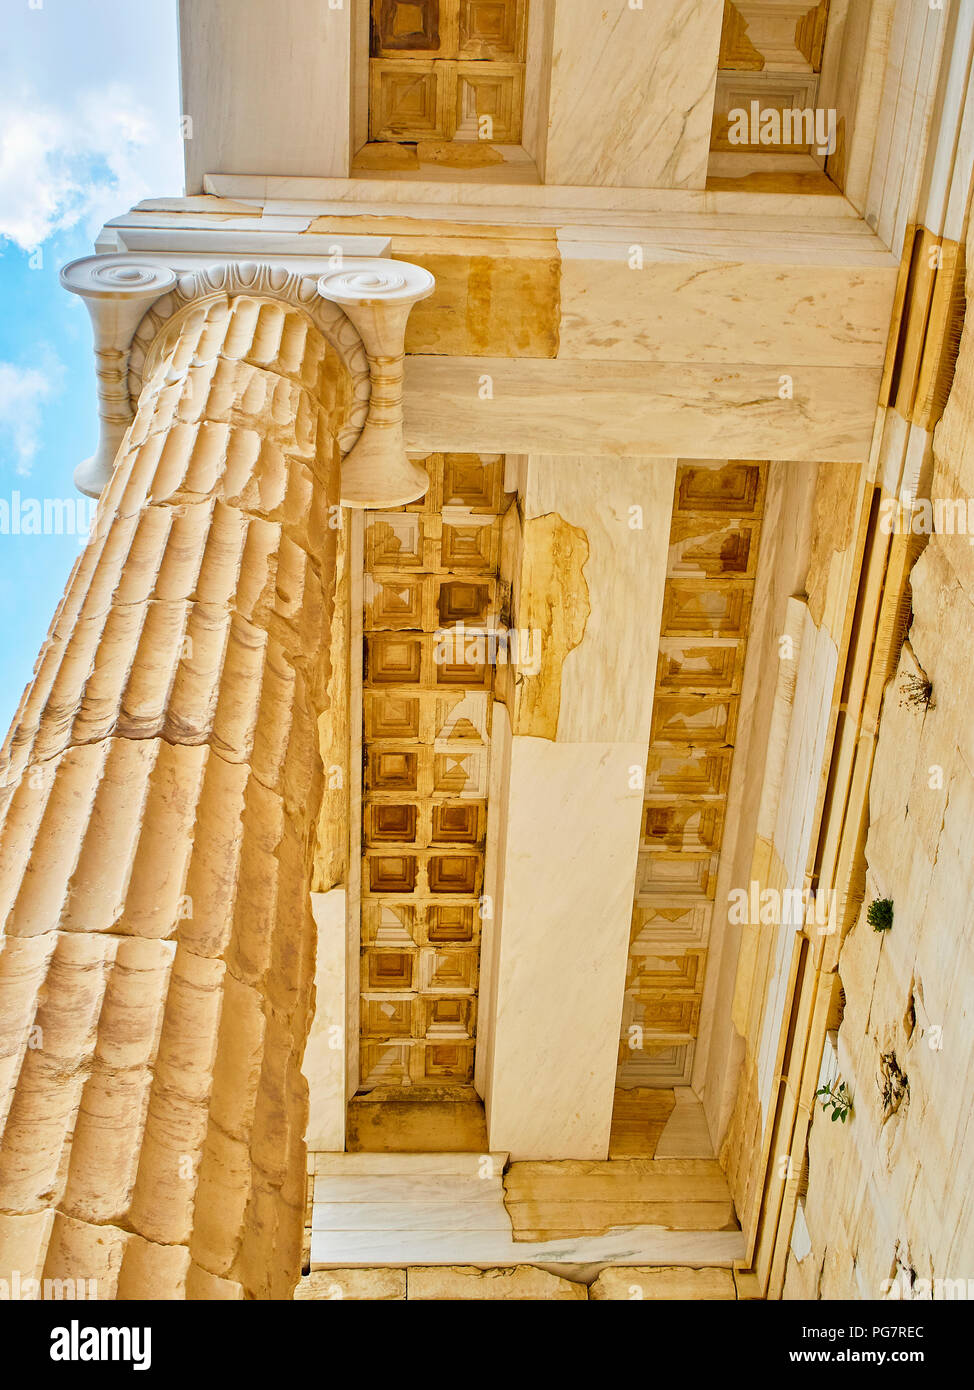 Colonne doriche e ripristinato architrave particolare della facciata orientale di propilei, l antica porta all'acropoli ateniese. Atene. Attica, Grecia. Foto Stock